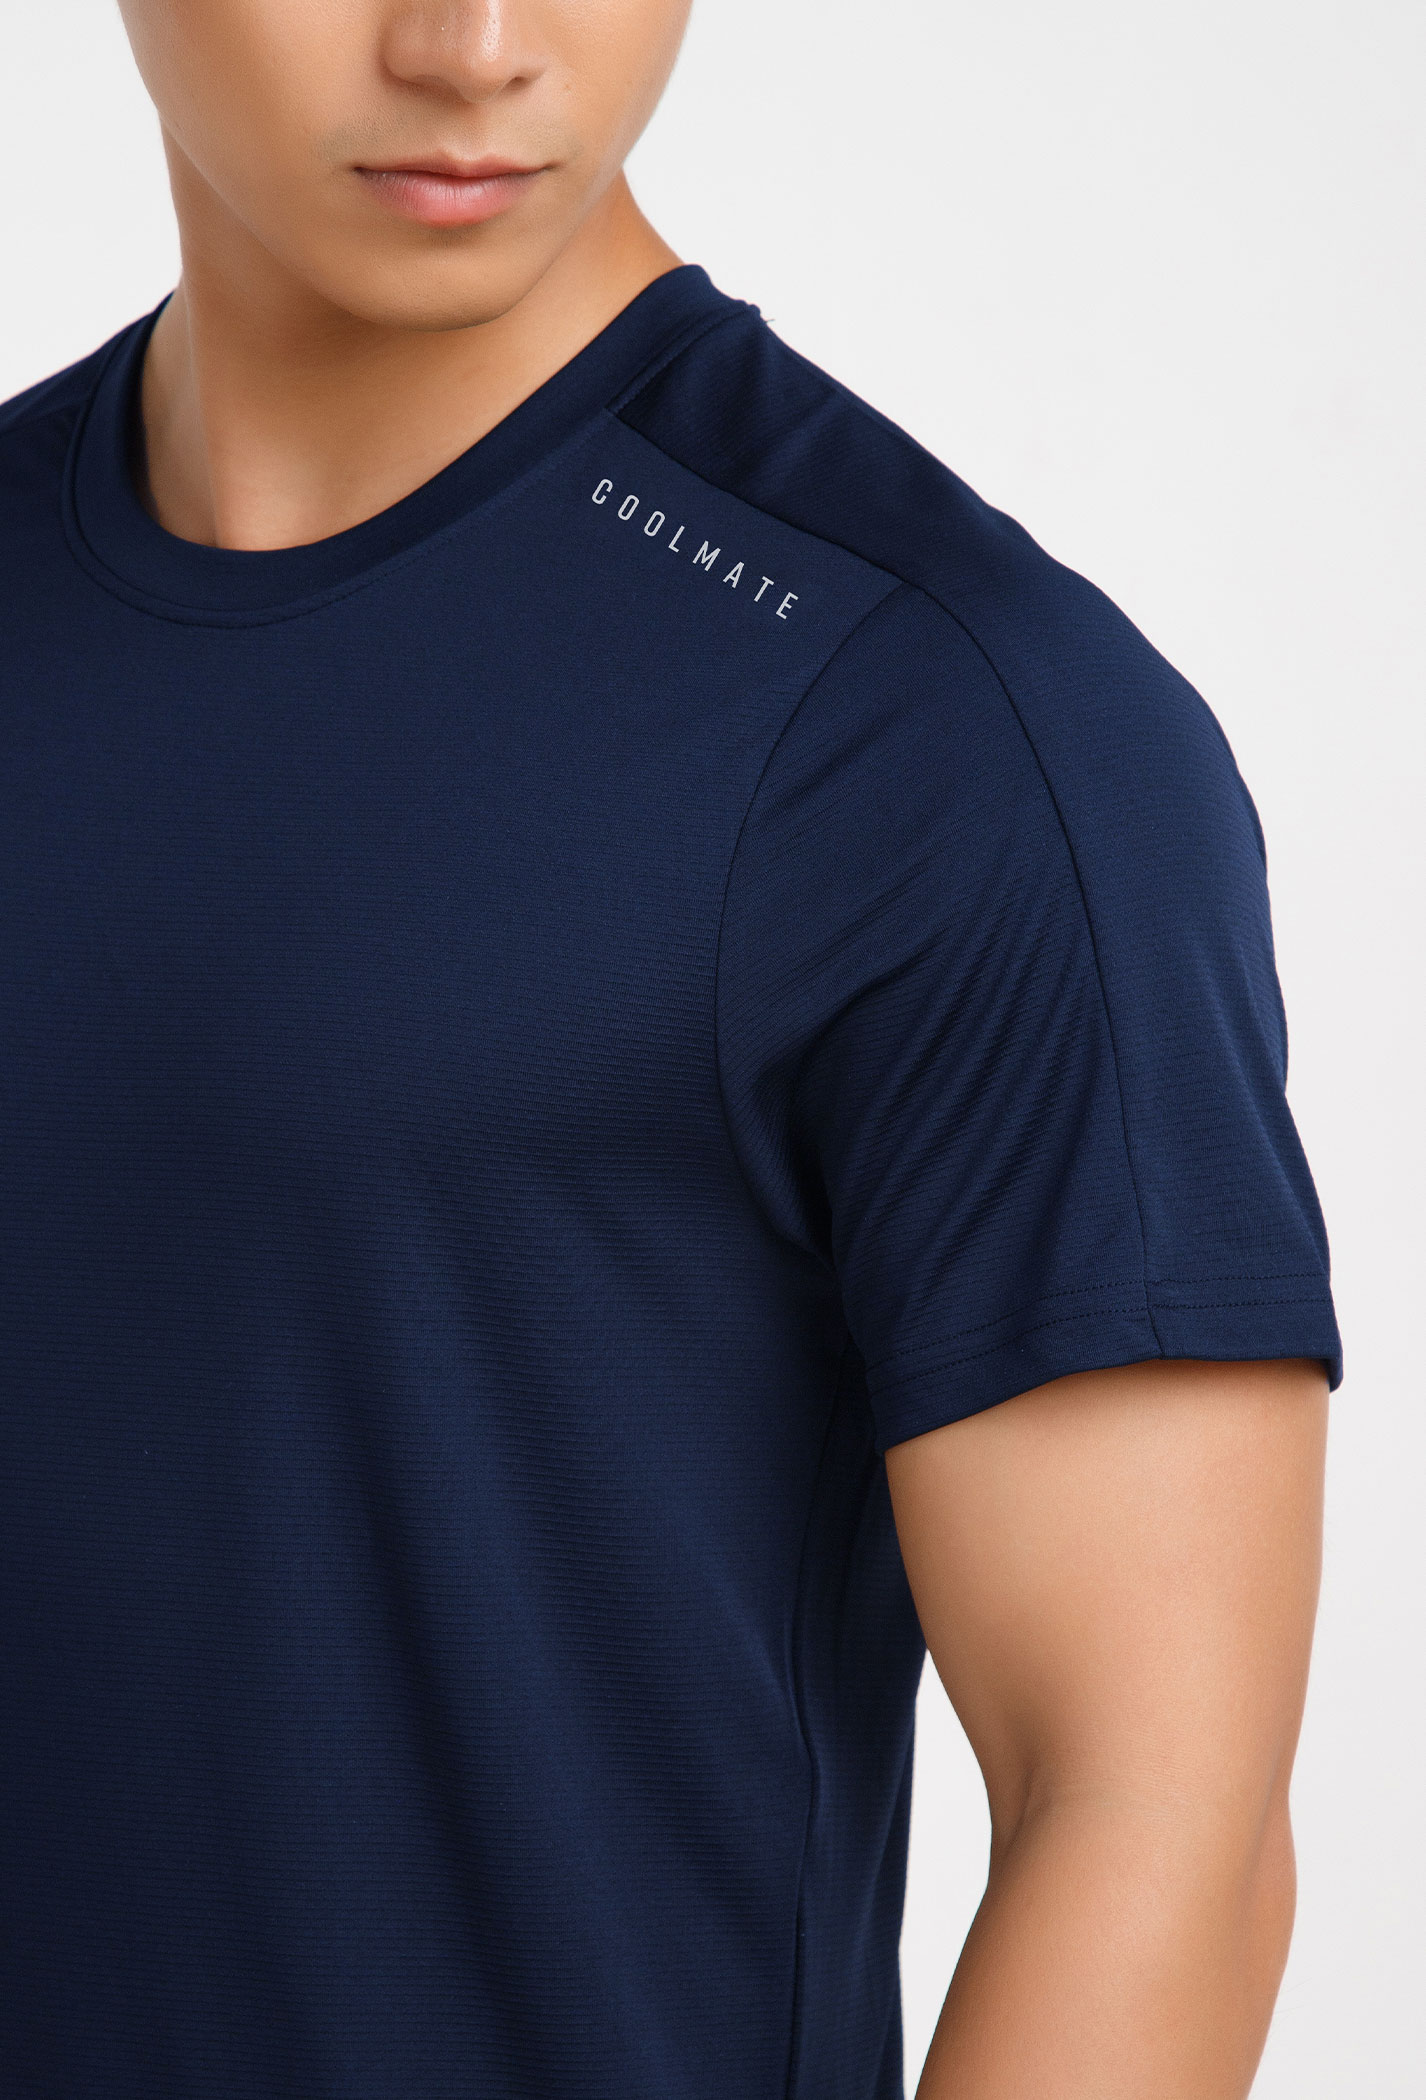 T-Shirt thể thao V1 xanh-navy 3